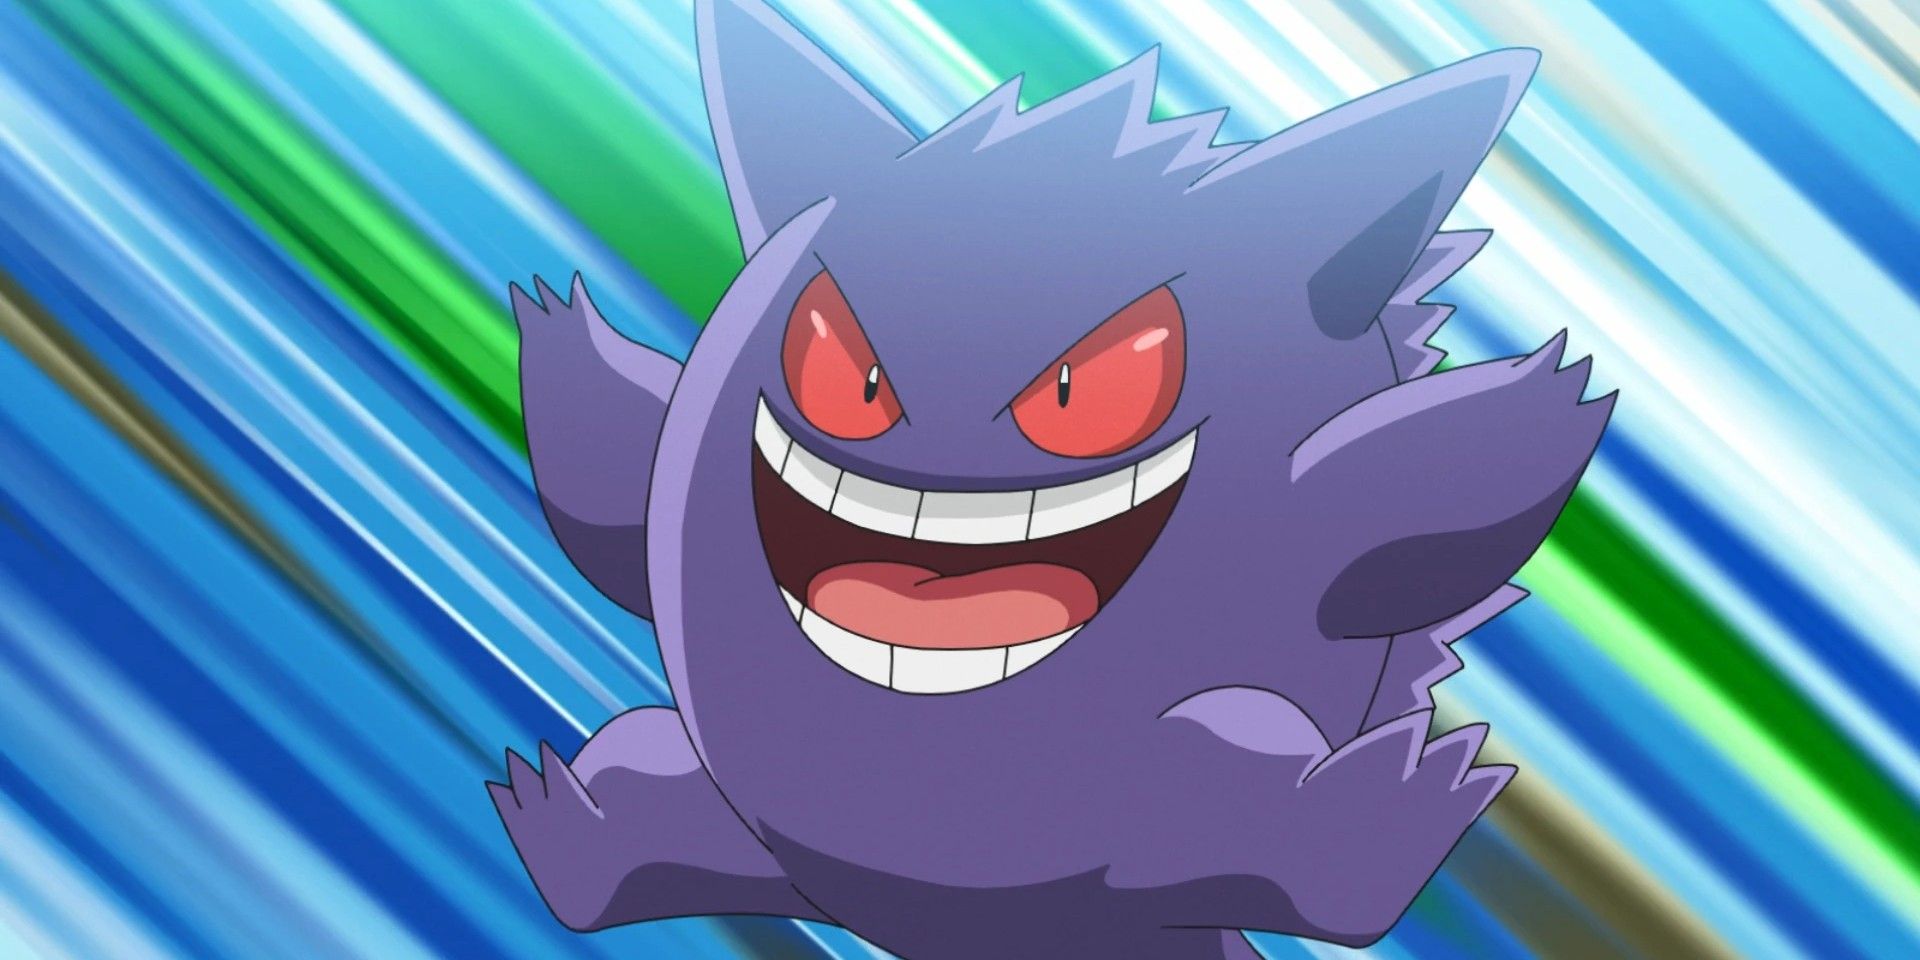 Ash's Gengar smiling in the Pokémon anime.